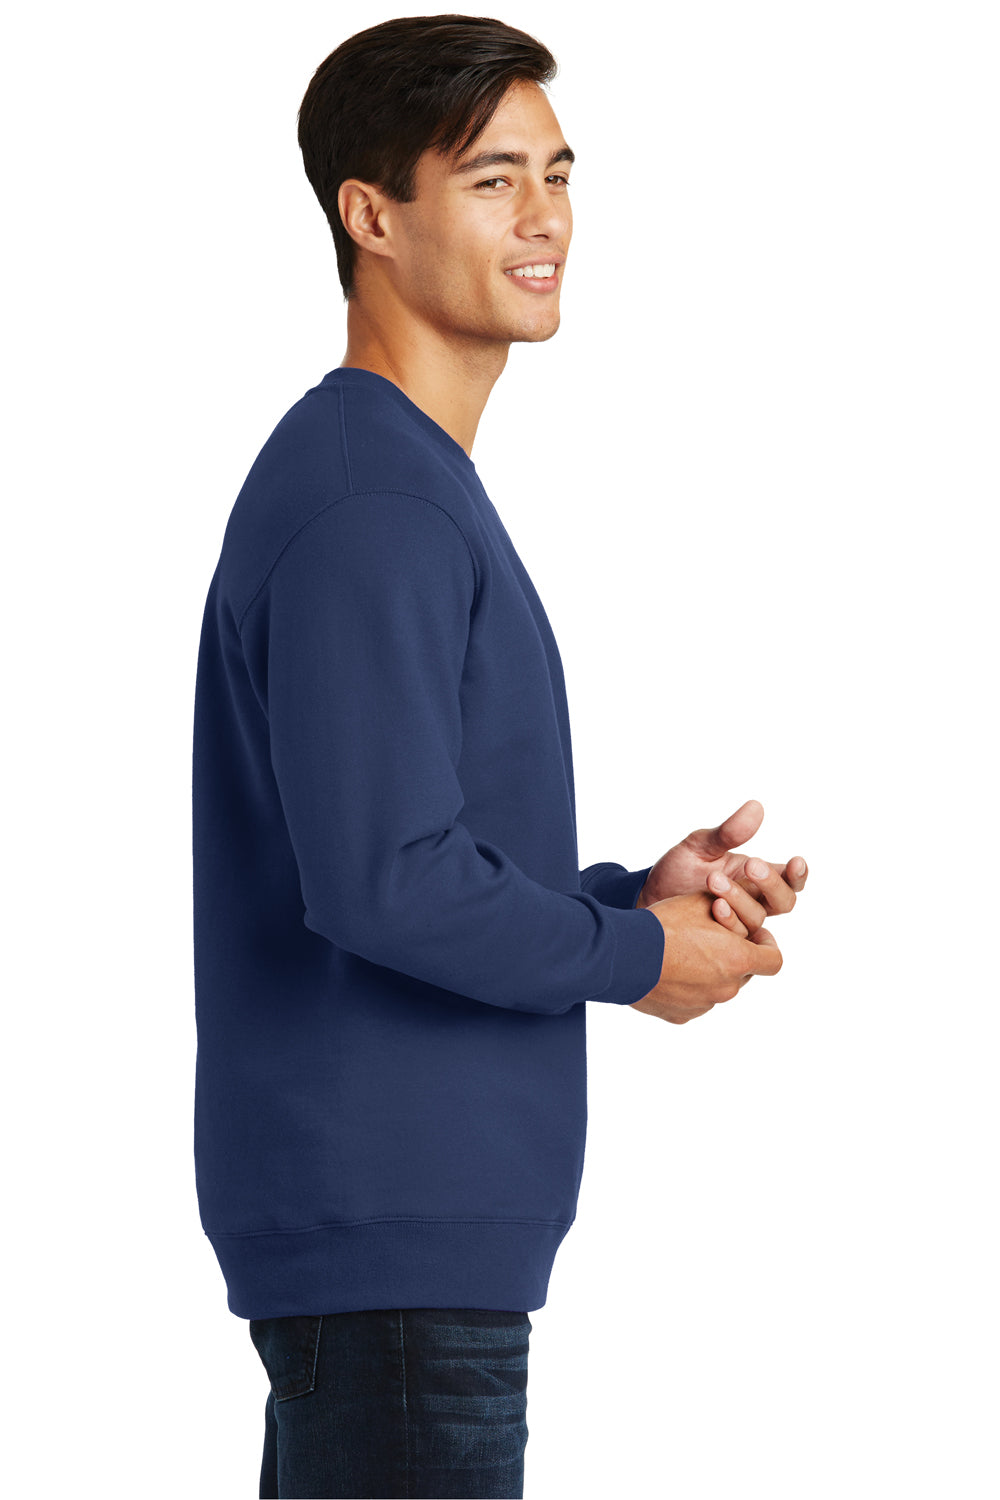 Port & Company PC850 Mens Fan Favorite Fleece Crewneck Sweatshirt Navy Blue Side